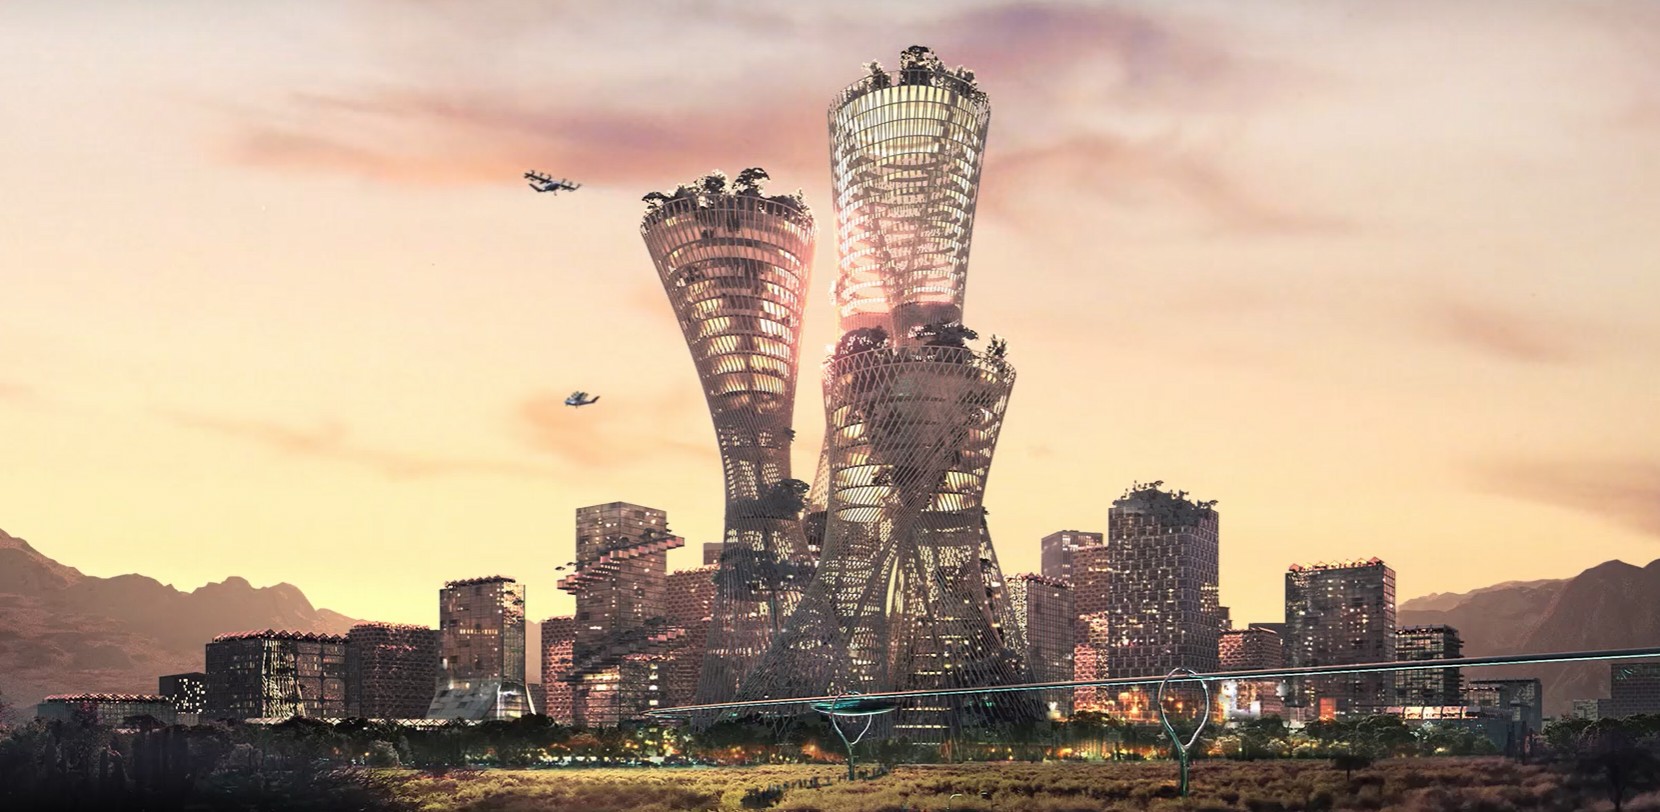 Representação de Telosa, cidade futurística que bilionário Marc Lore planeja construir  (Foto: Reprodução/Telosa)